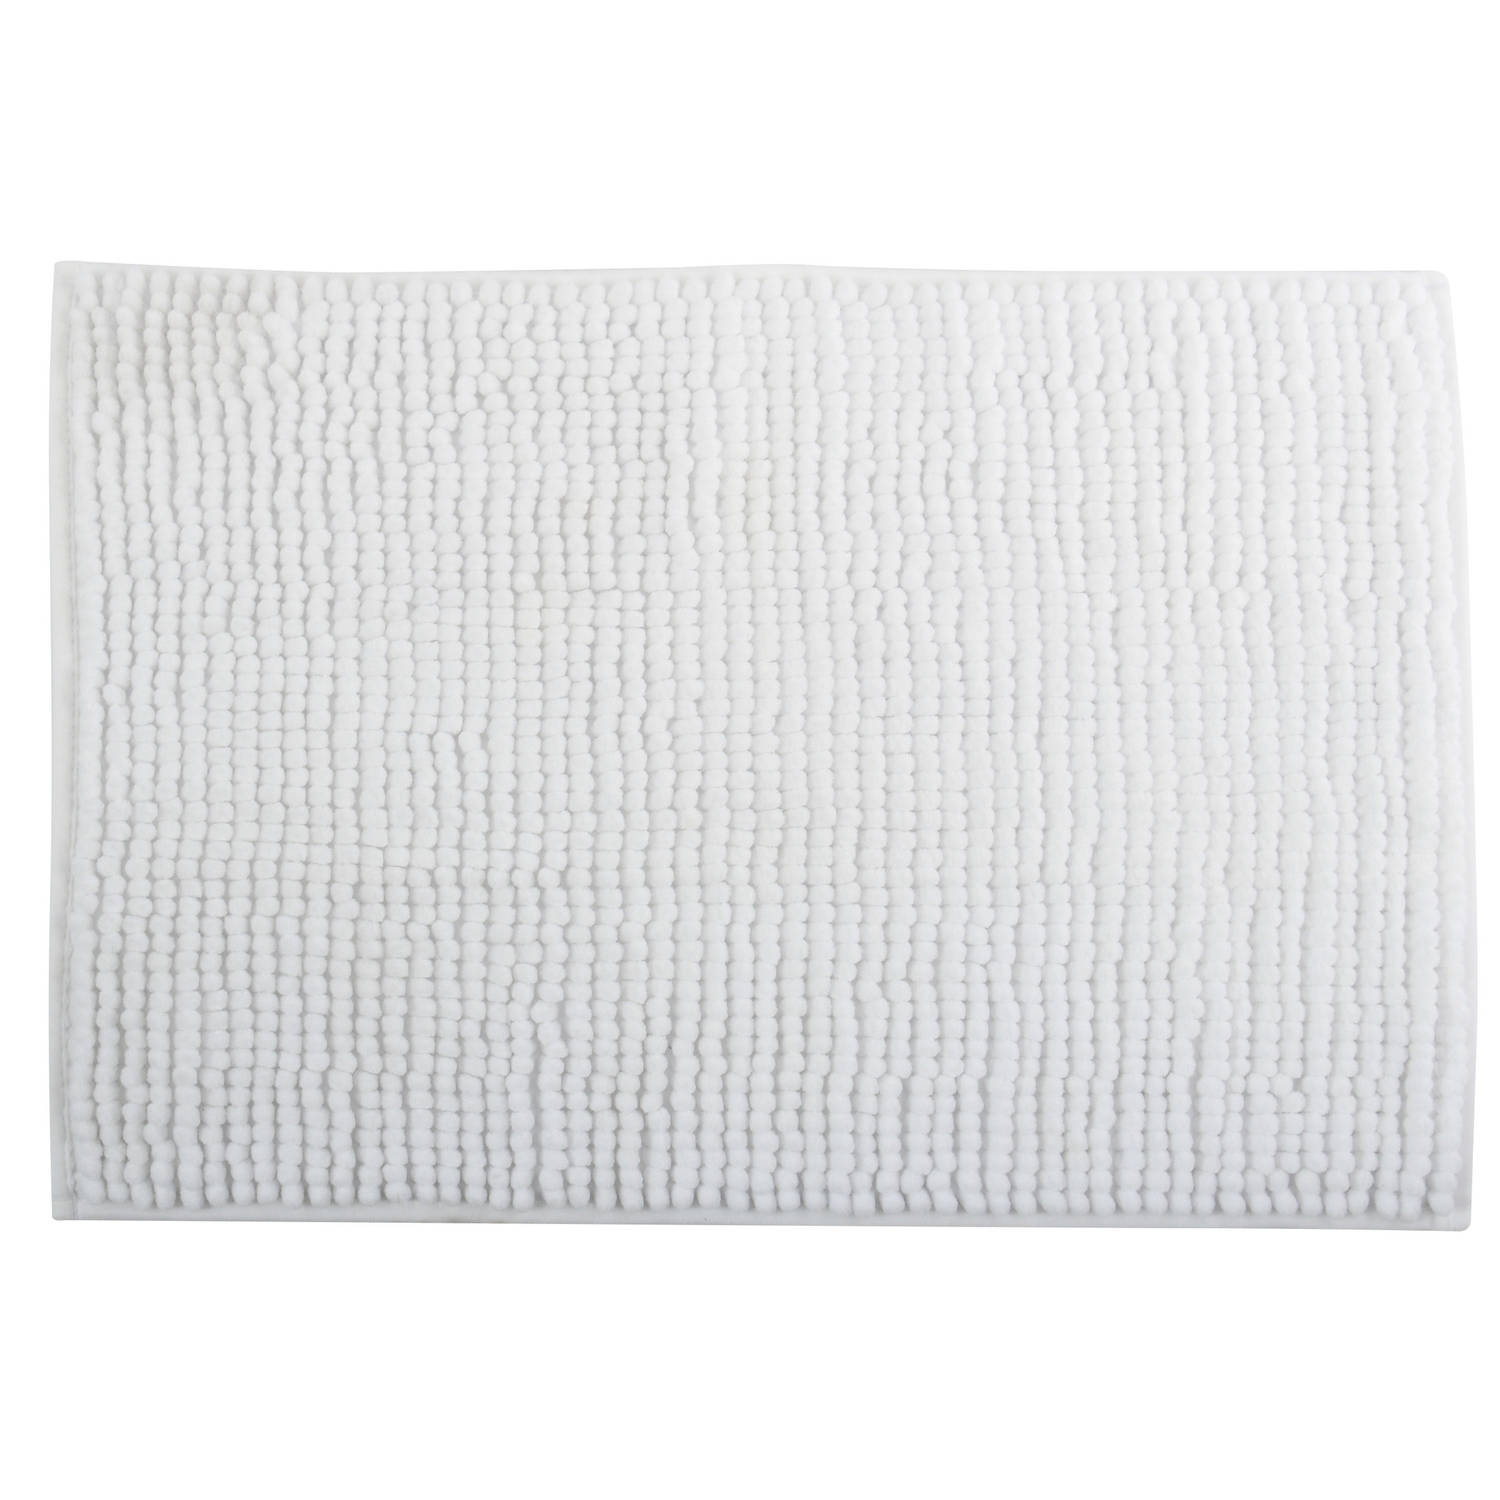 MSV Badkamerkleed/badmat tapijtje voor op de vloer - ivoor wit - 50 x 80 cm - Microvezel - anti slip